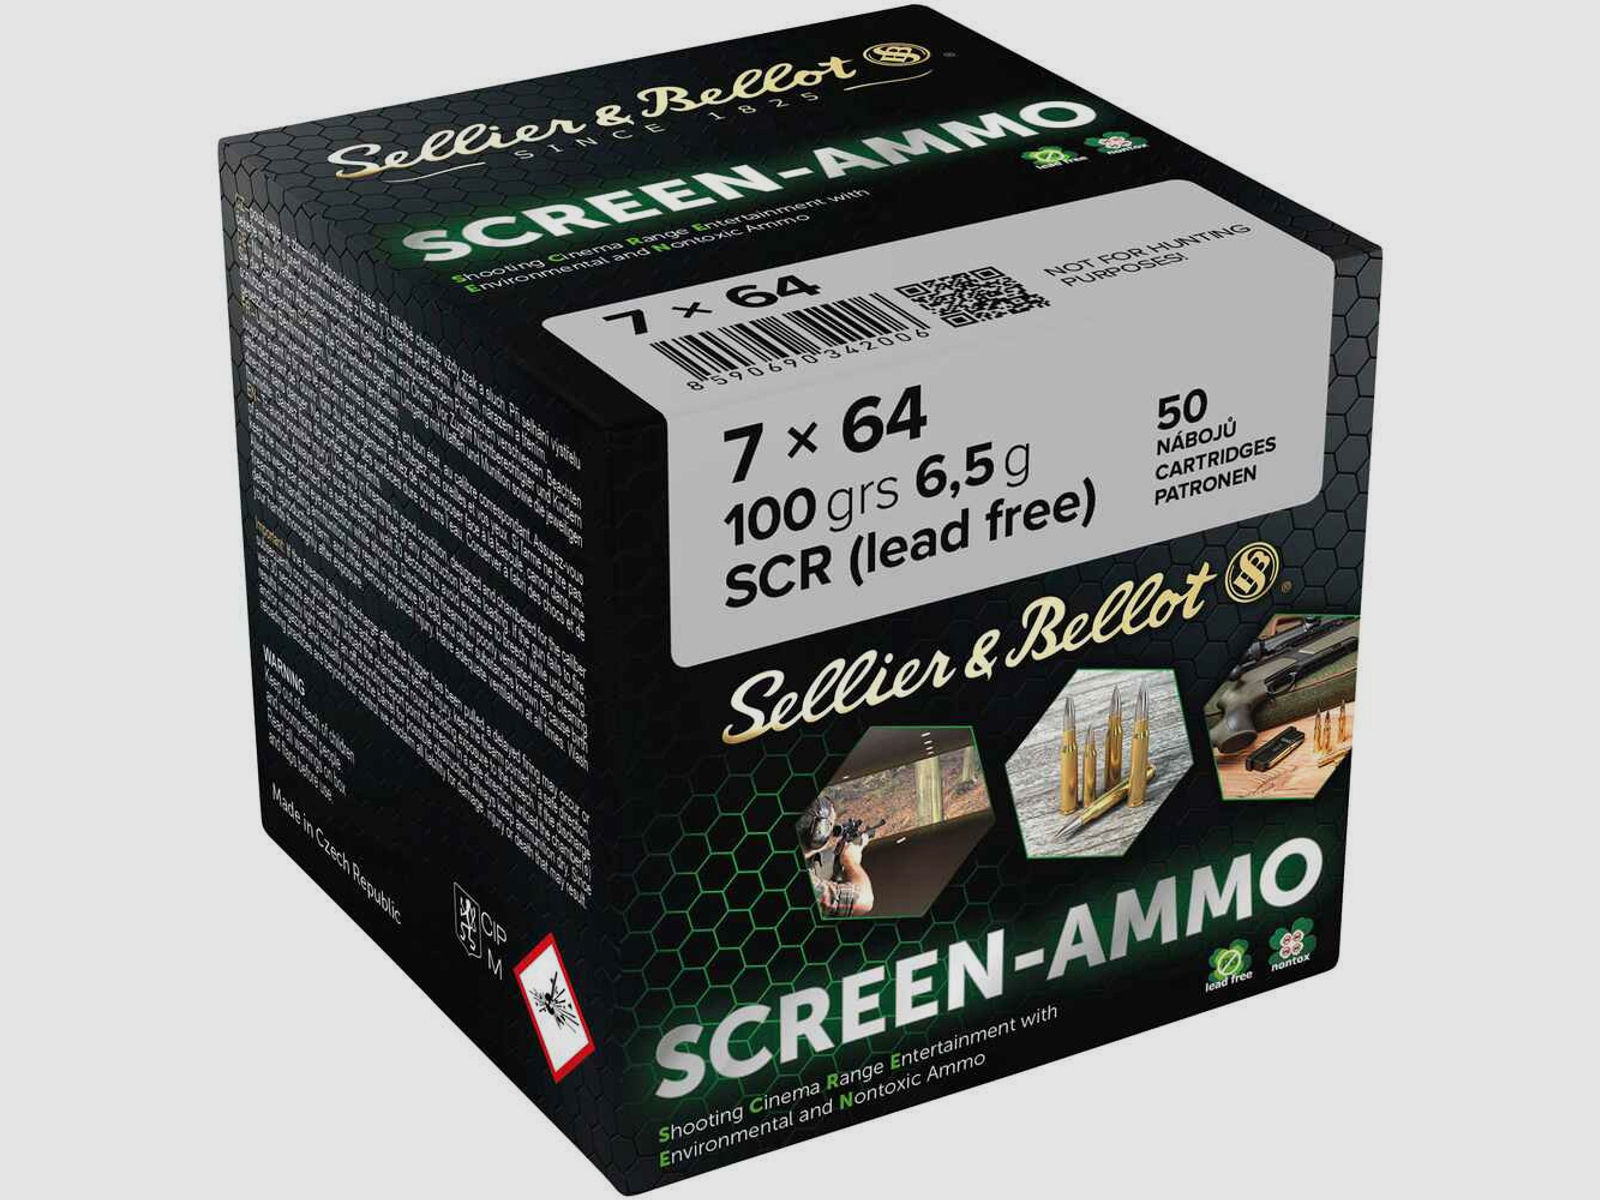 Sellier & Bellot 7x64 100grs Screen-Ammo 50STK Munition bleifrei